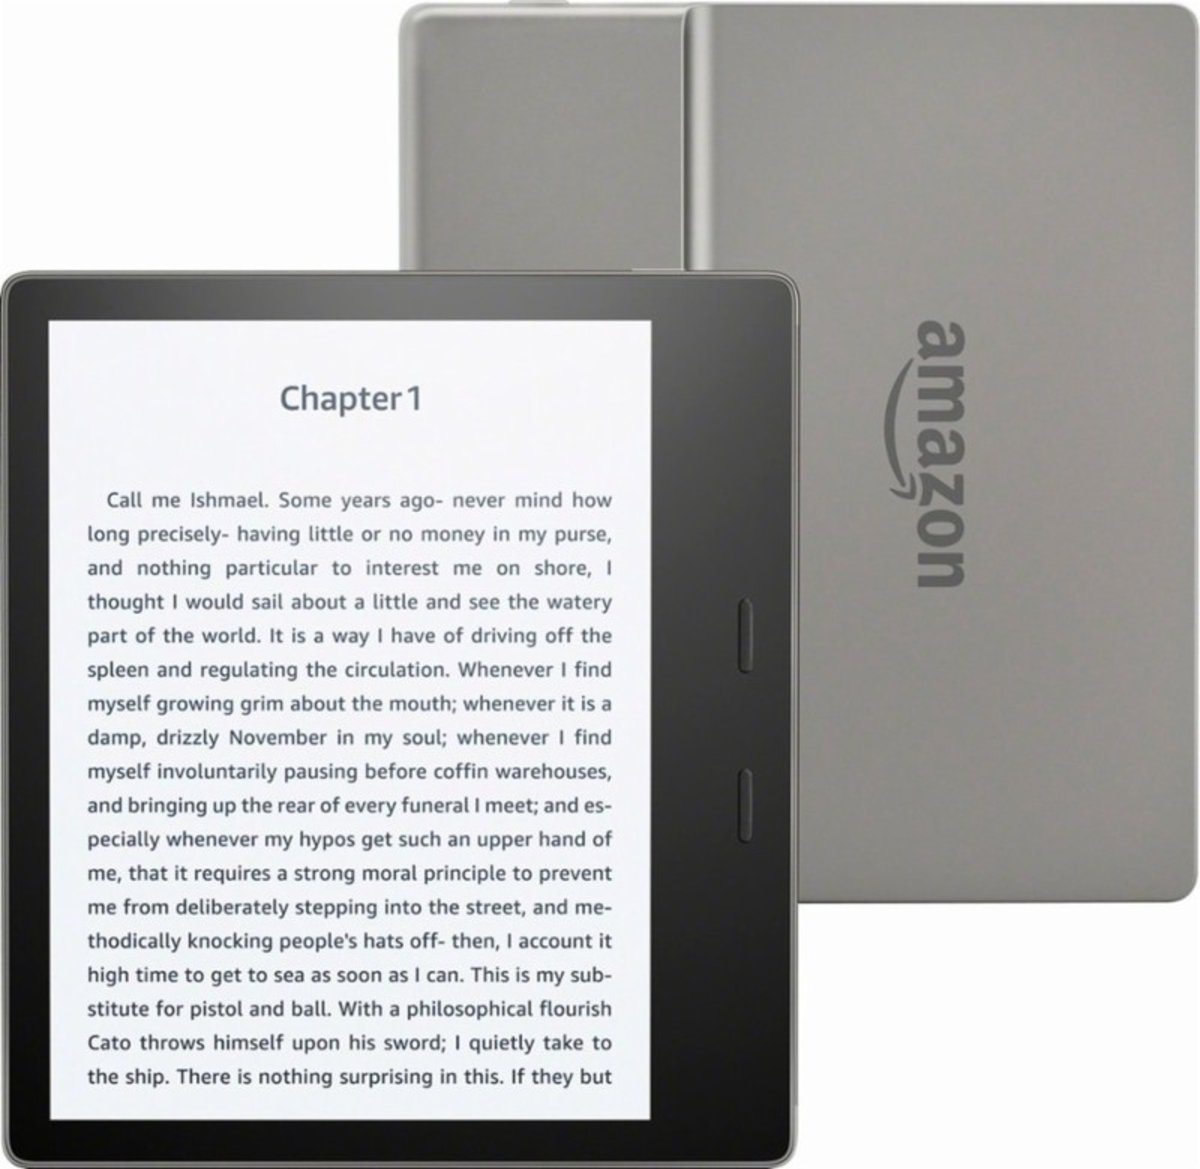 亞馬遜| Kindle Oasis (32GB內存廣告版)(第10代) 7吋電子書閱讀器(灰色